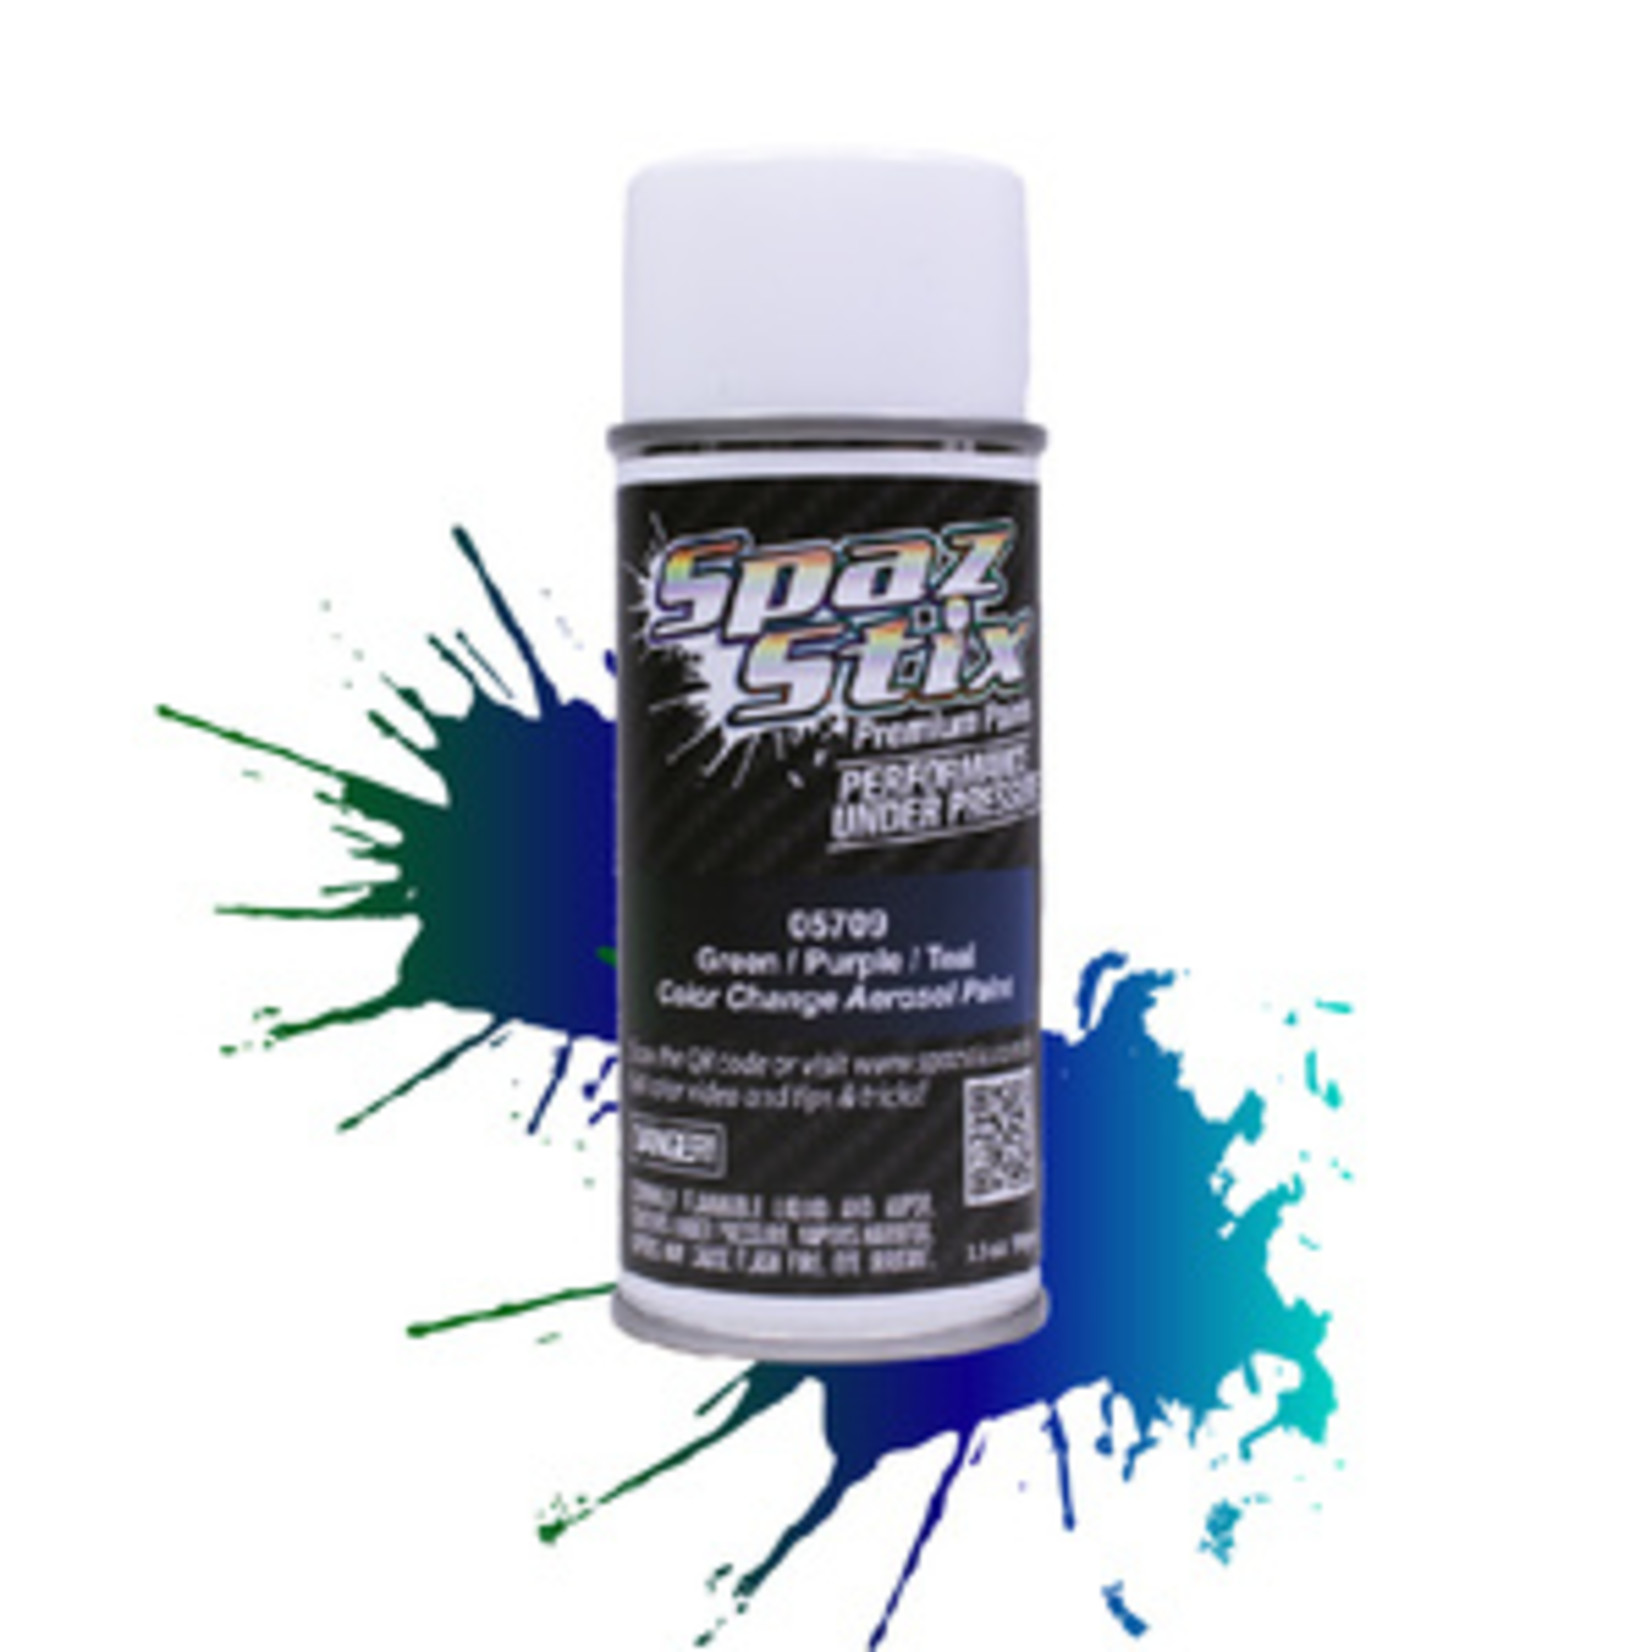 Spaz Stix SZX05709  Color Change Aerosol Paint, Green/Purple/Teal, 3.5oz Can